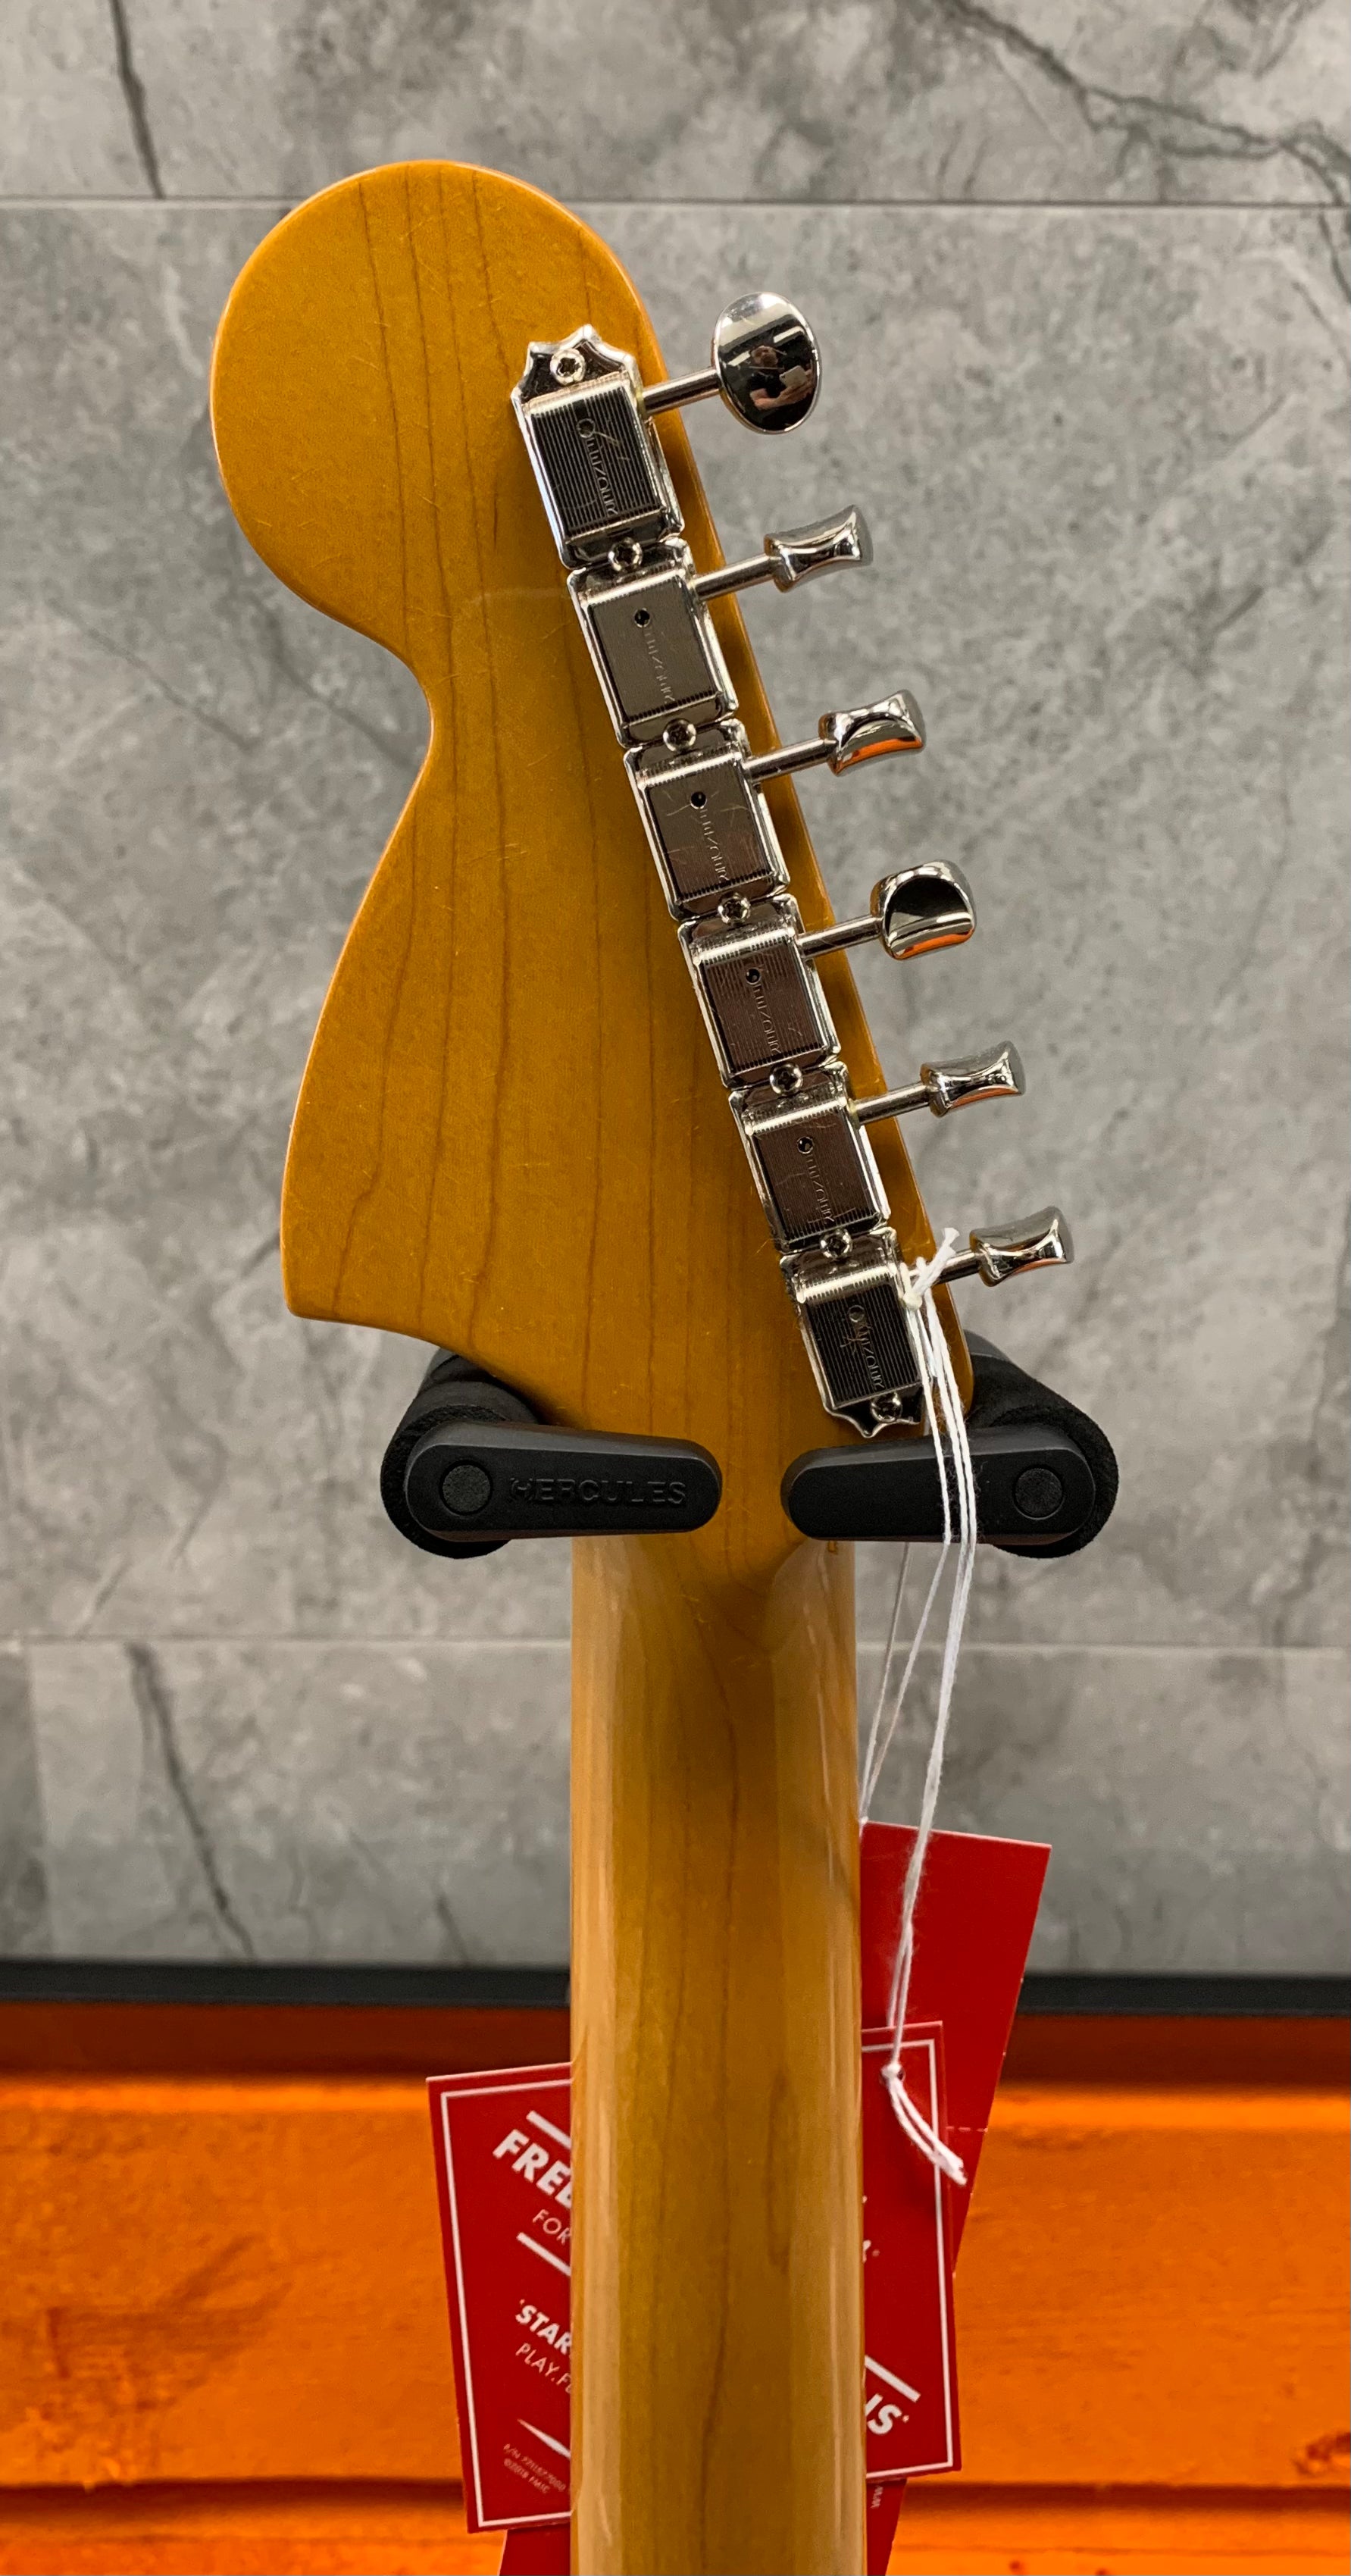 Fender American Vintage II 1966 Jazzmaster Rosewood Fingerboard, 3-Color Sunburst 0110340800 SERIAL NUMBER V2210535 - 8.0 LBS